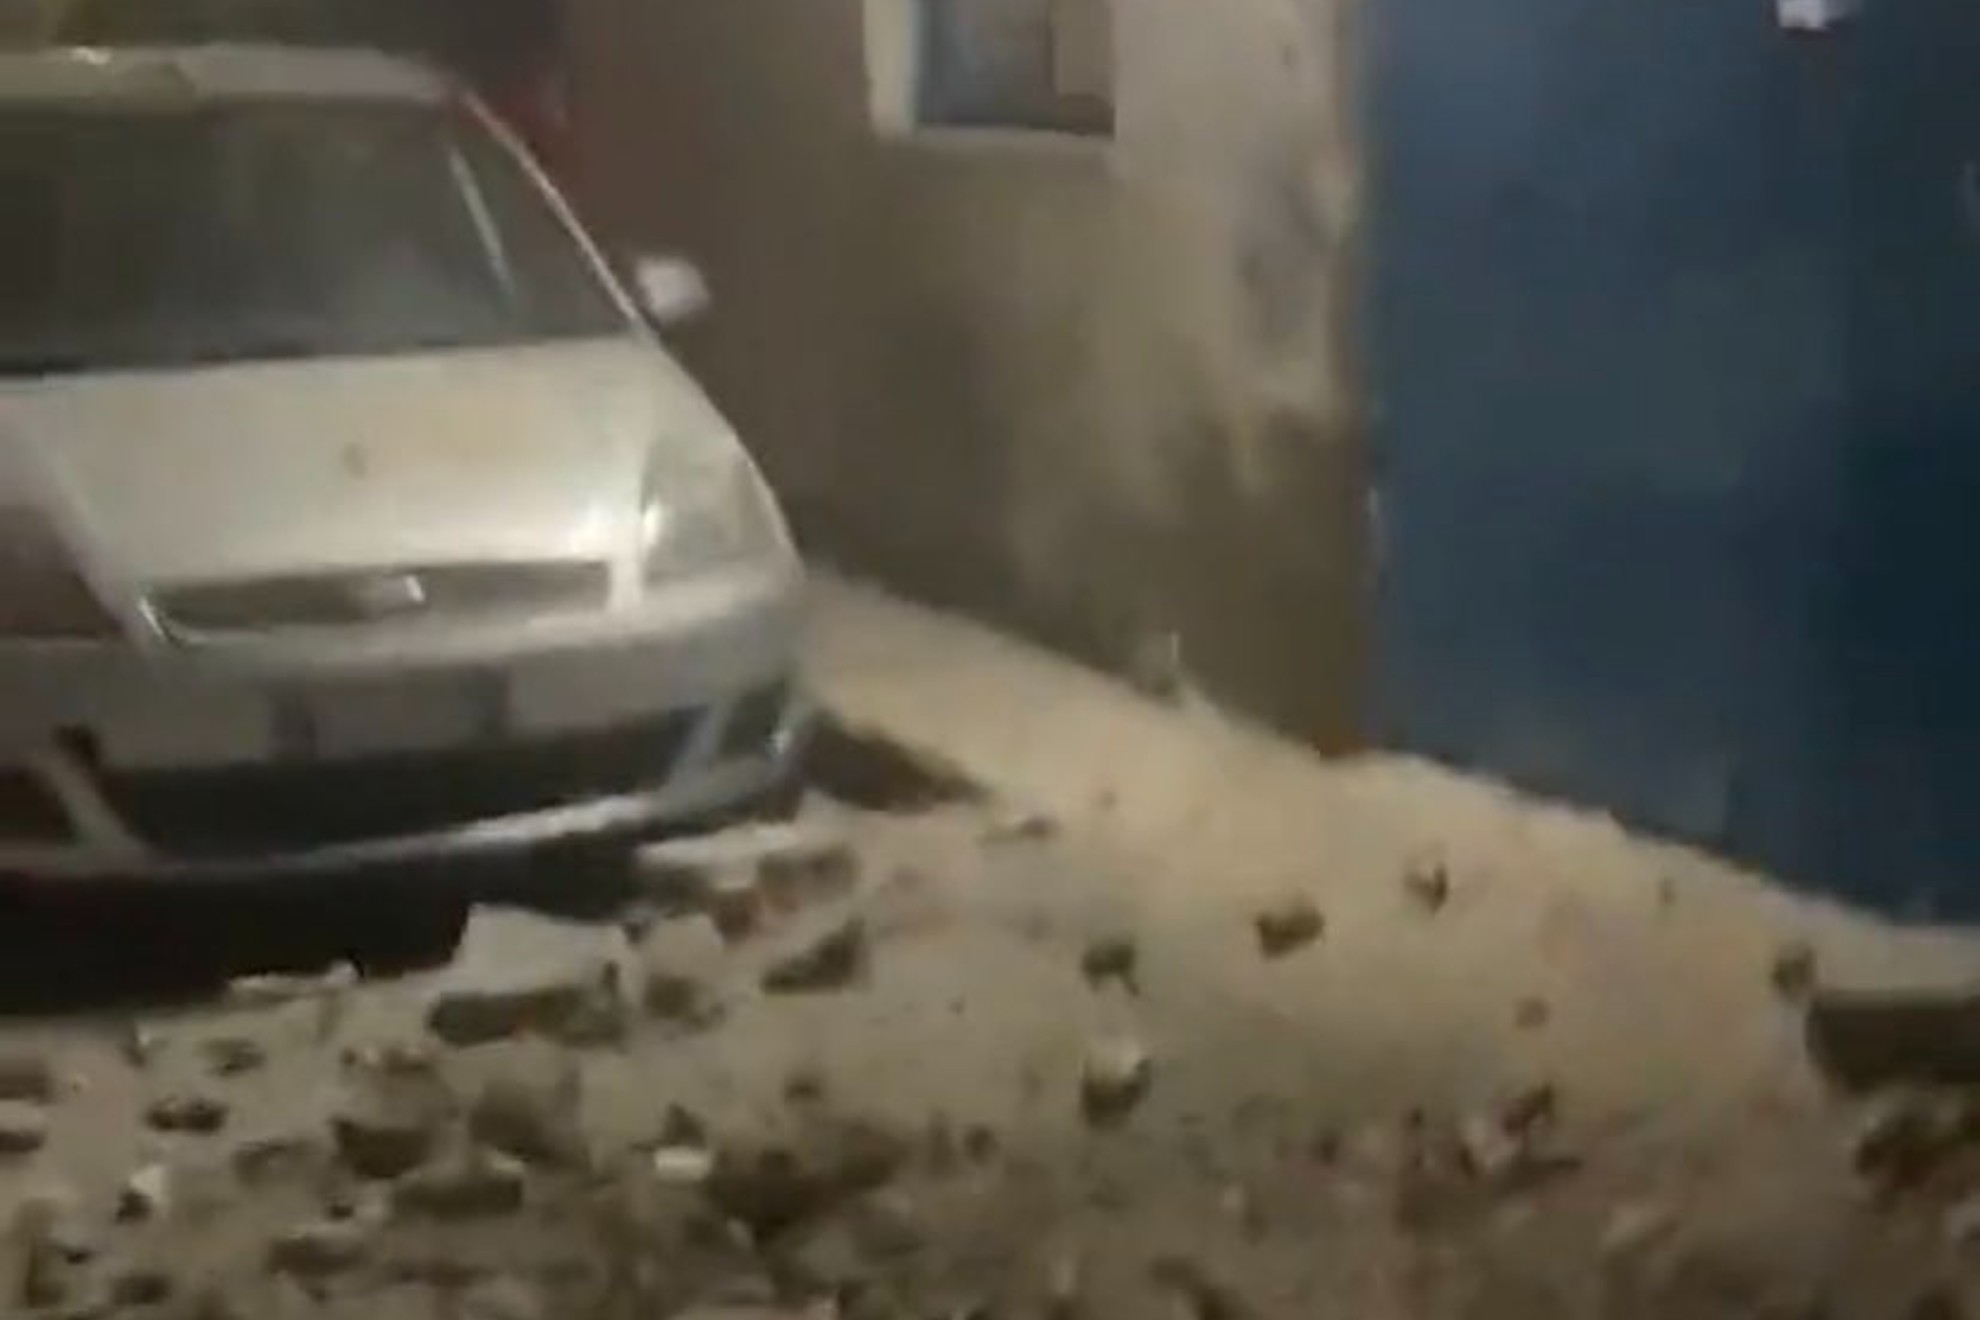 Terremoto atinge Nápoles horas antes de partida da Champions League -  Guararema News